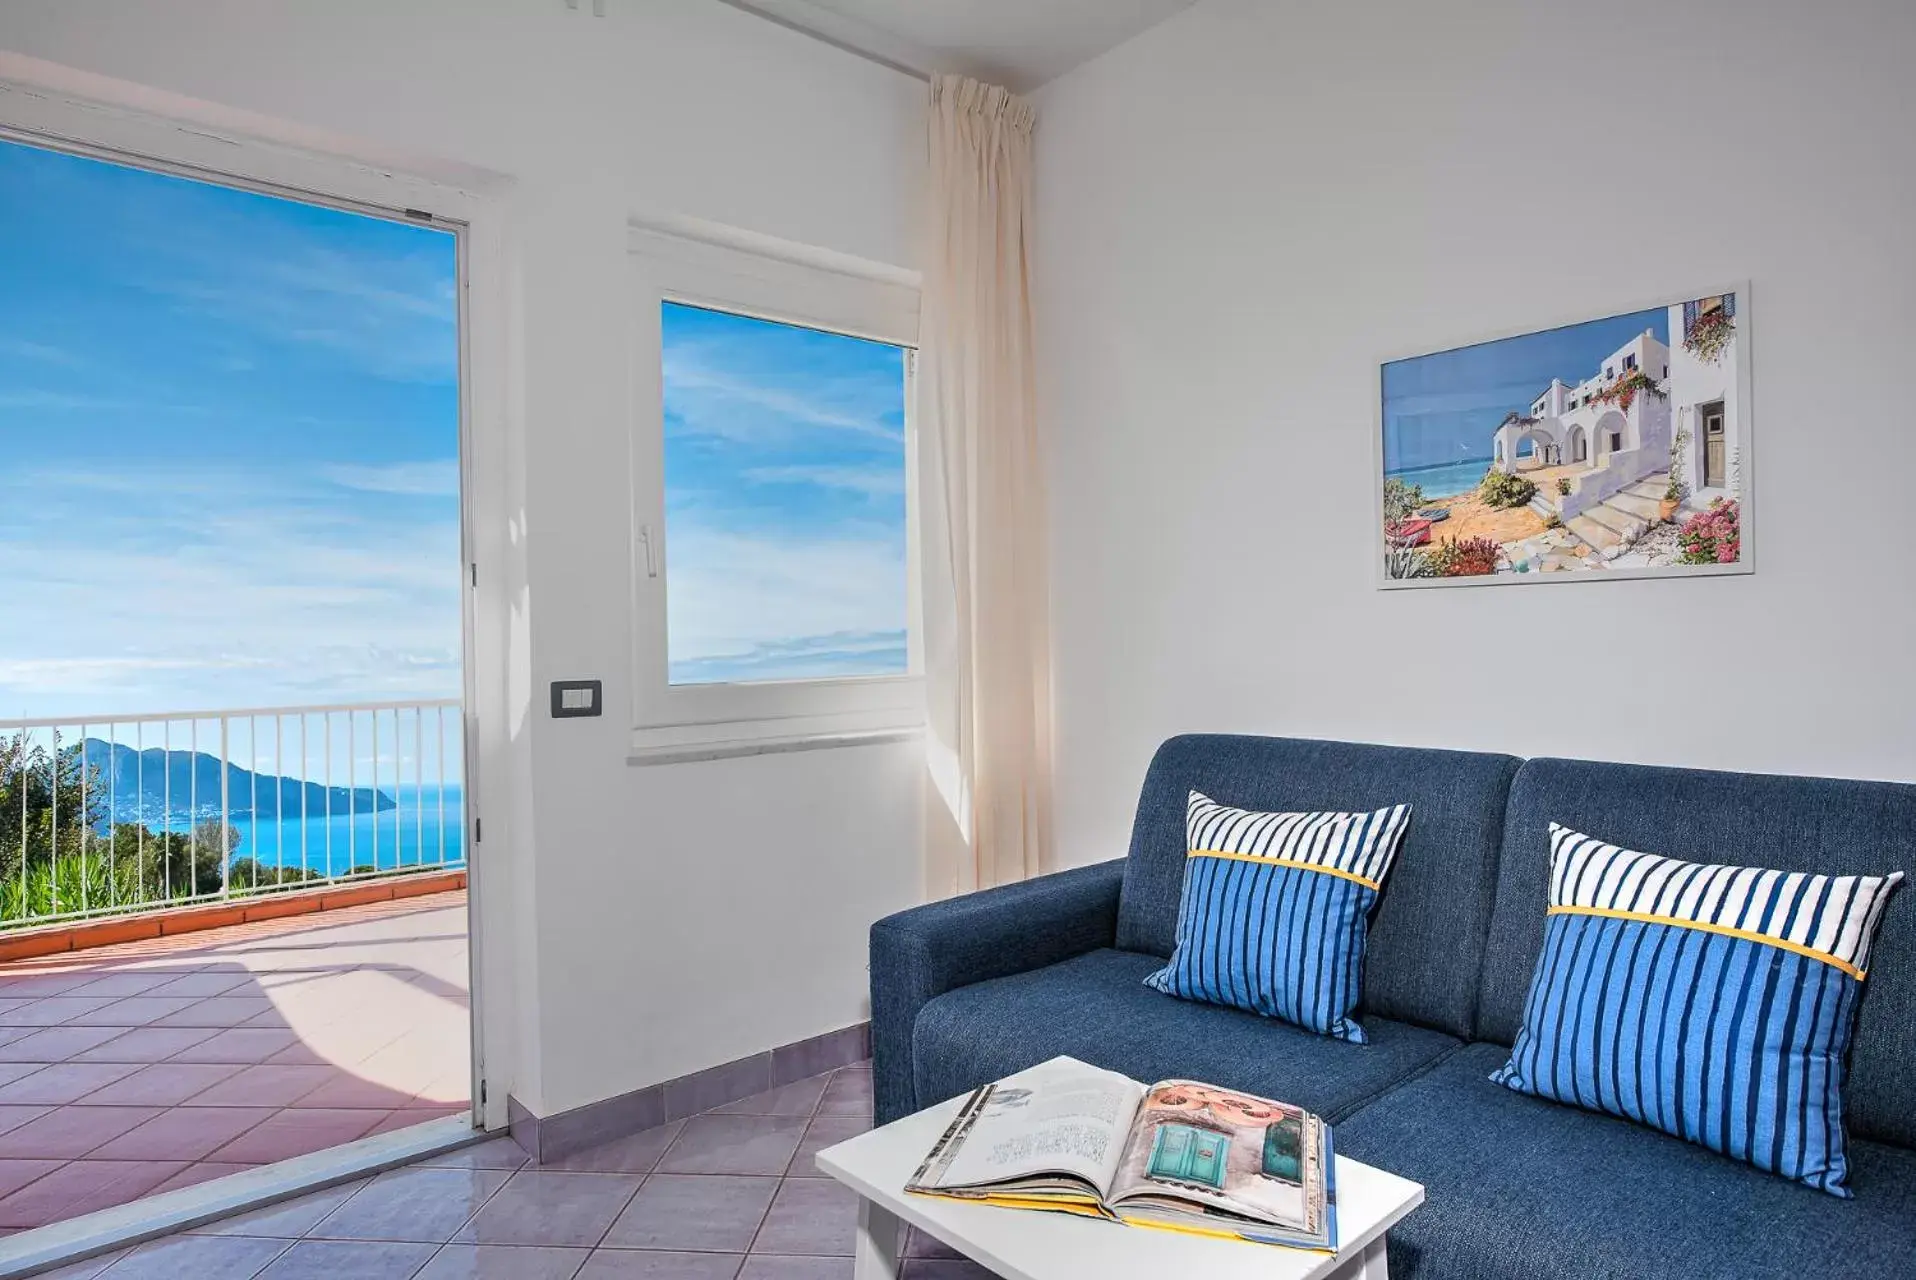 Living room in Gocce Di Capri Resort